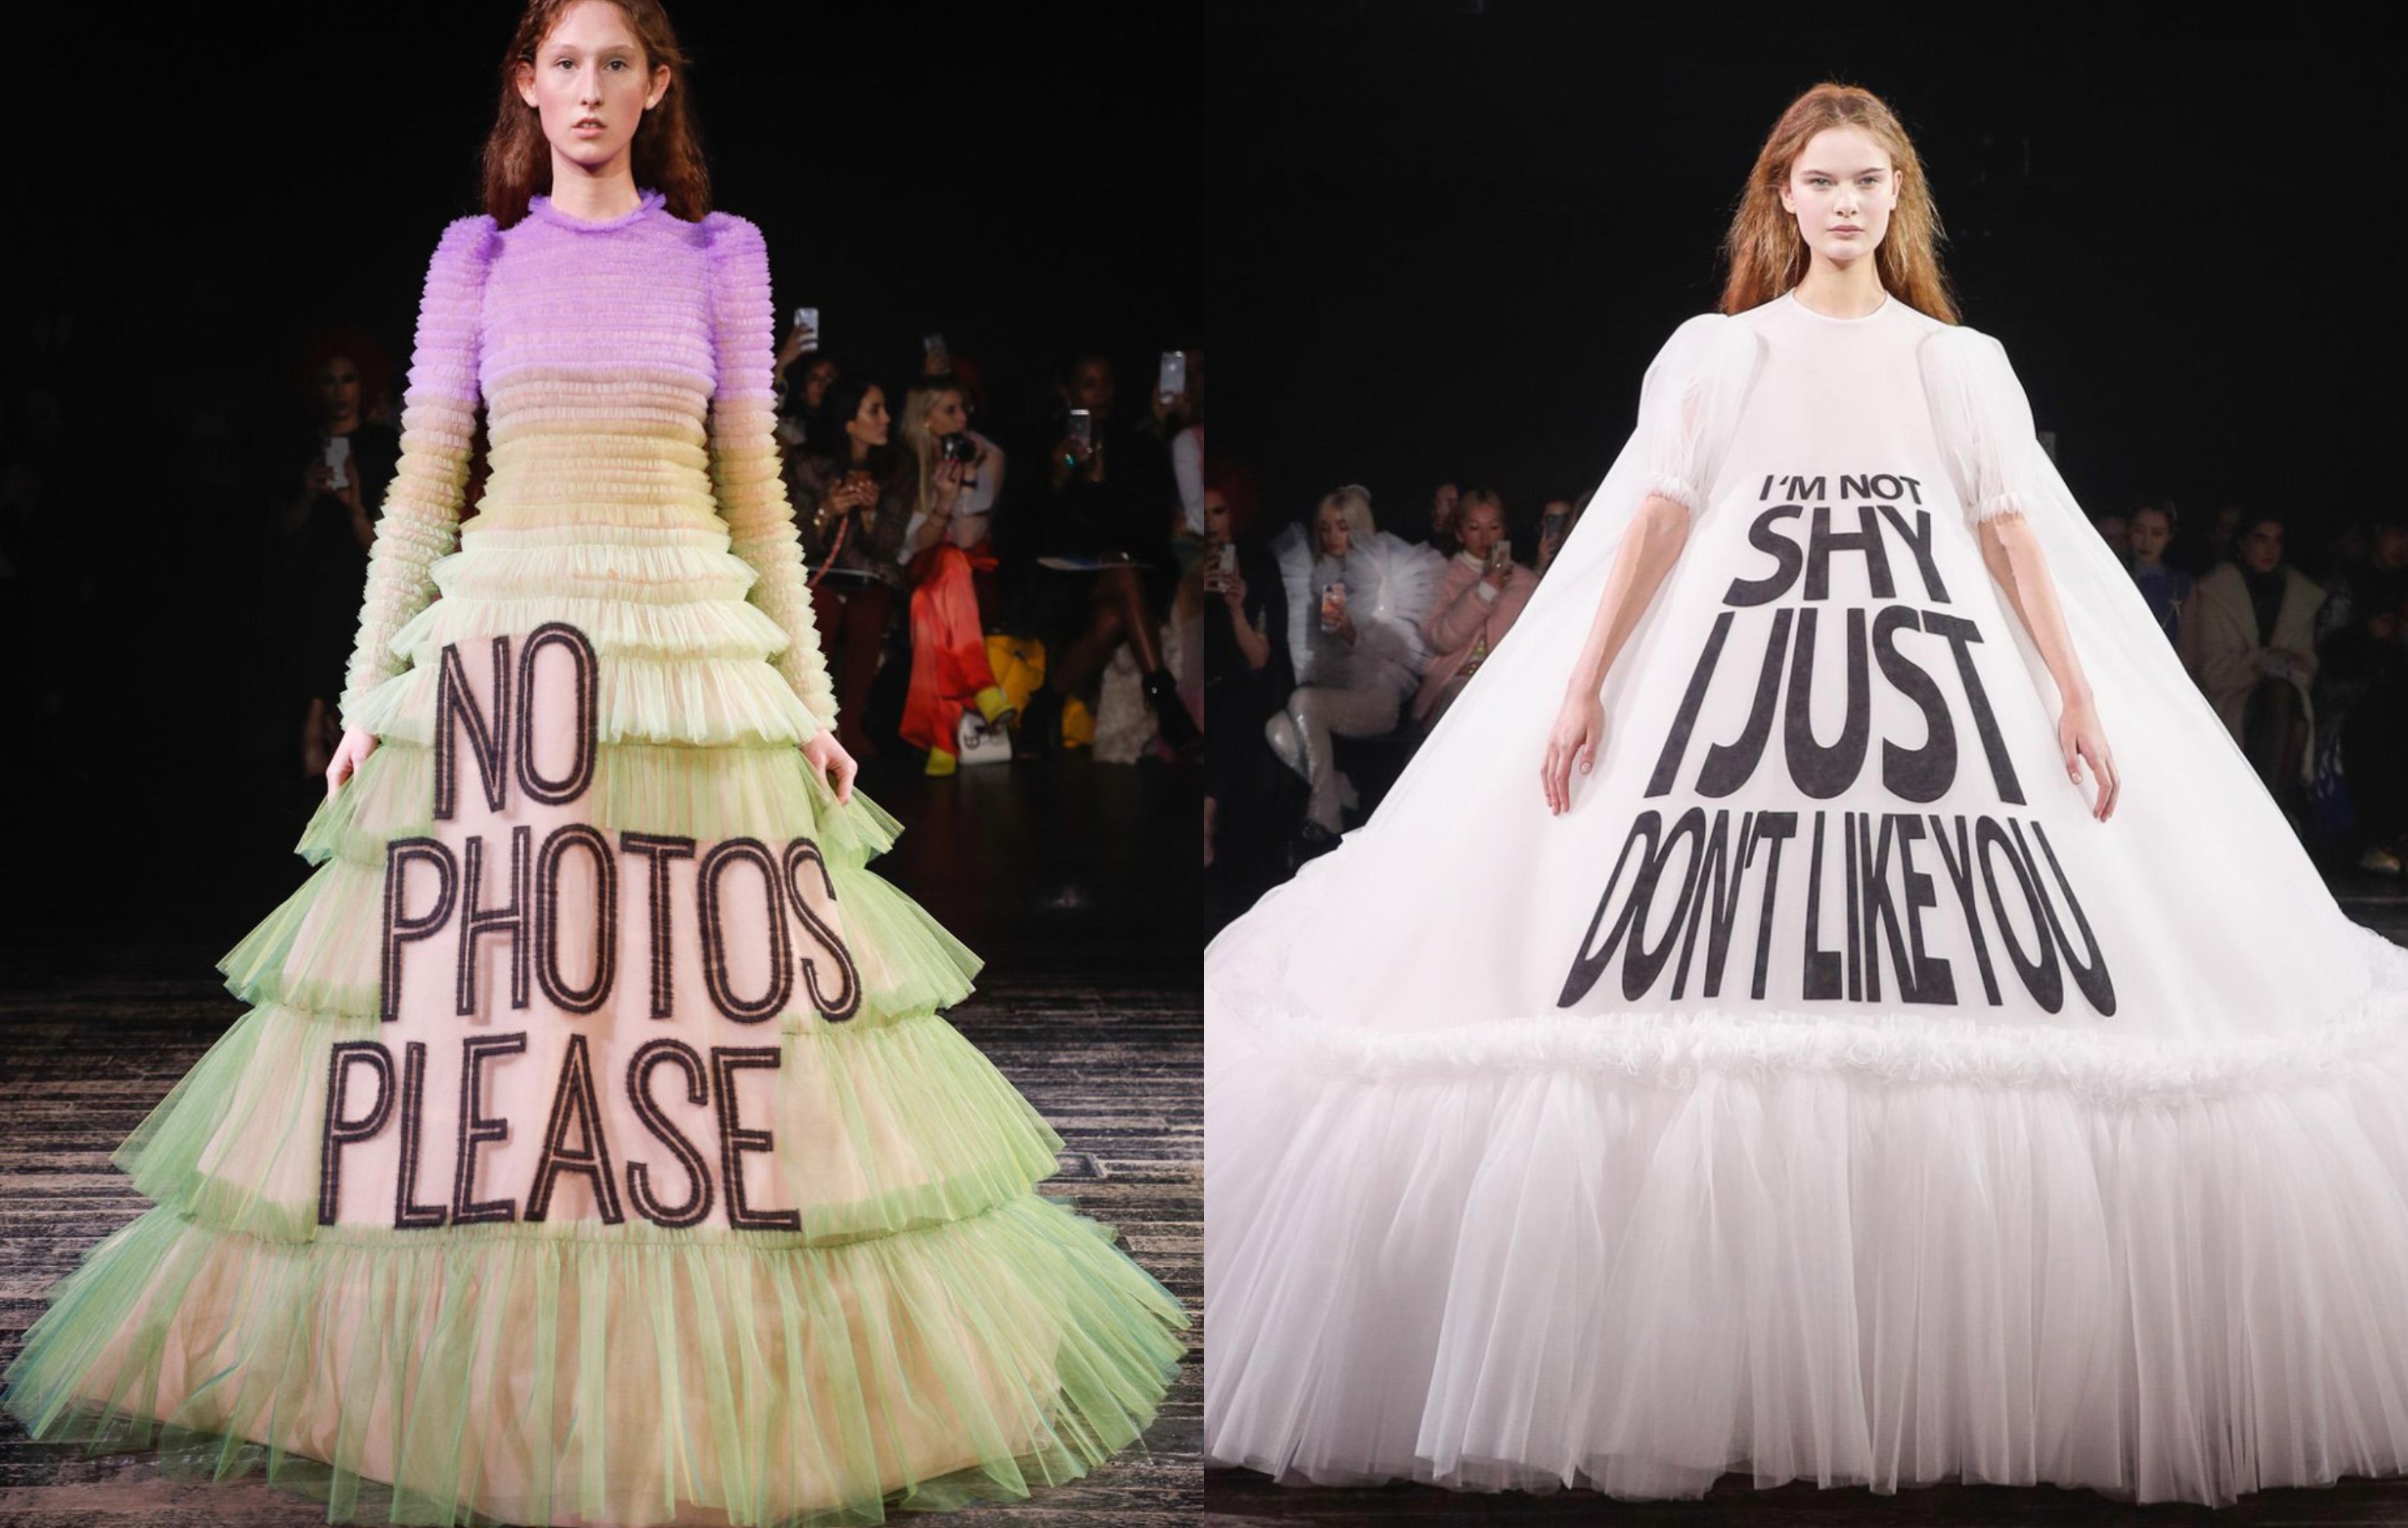 À l'occasion de la Fashion Week printemps-été 2019, la maison néerlandaise Viktor & Rolf a fait défiler ses mannequins aux mines serrées, dans de folles robes en tulle ornées de slogans féministes. À la suite de quoi les internautes se sont emparés des clichés pour les détourner en mèmes sur Twitter. 